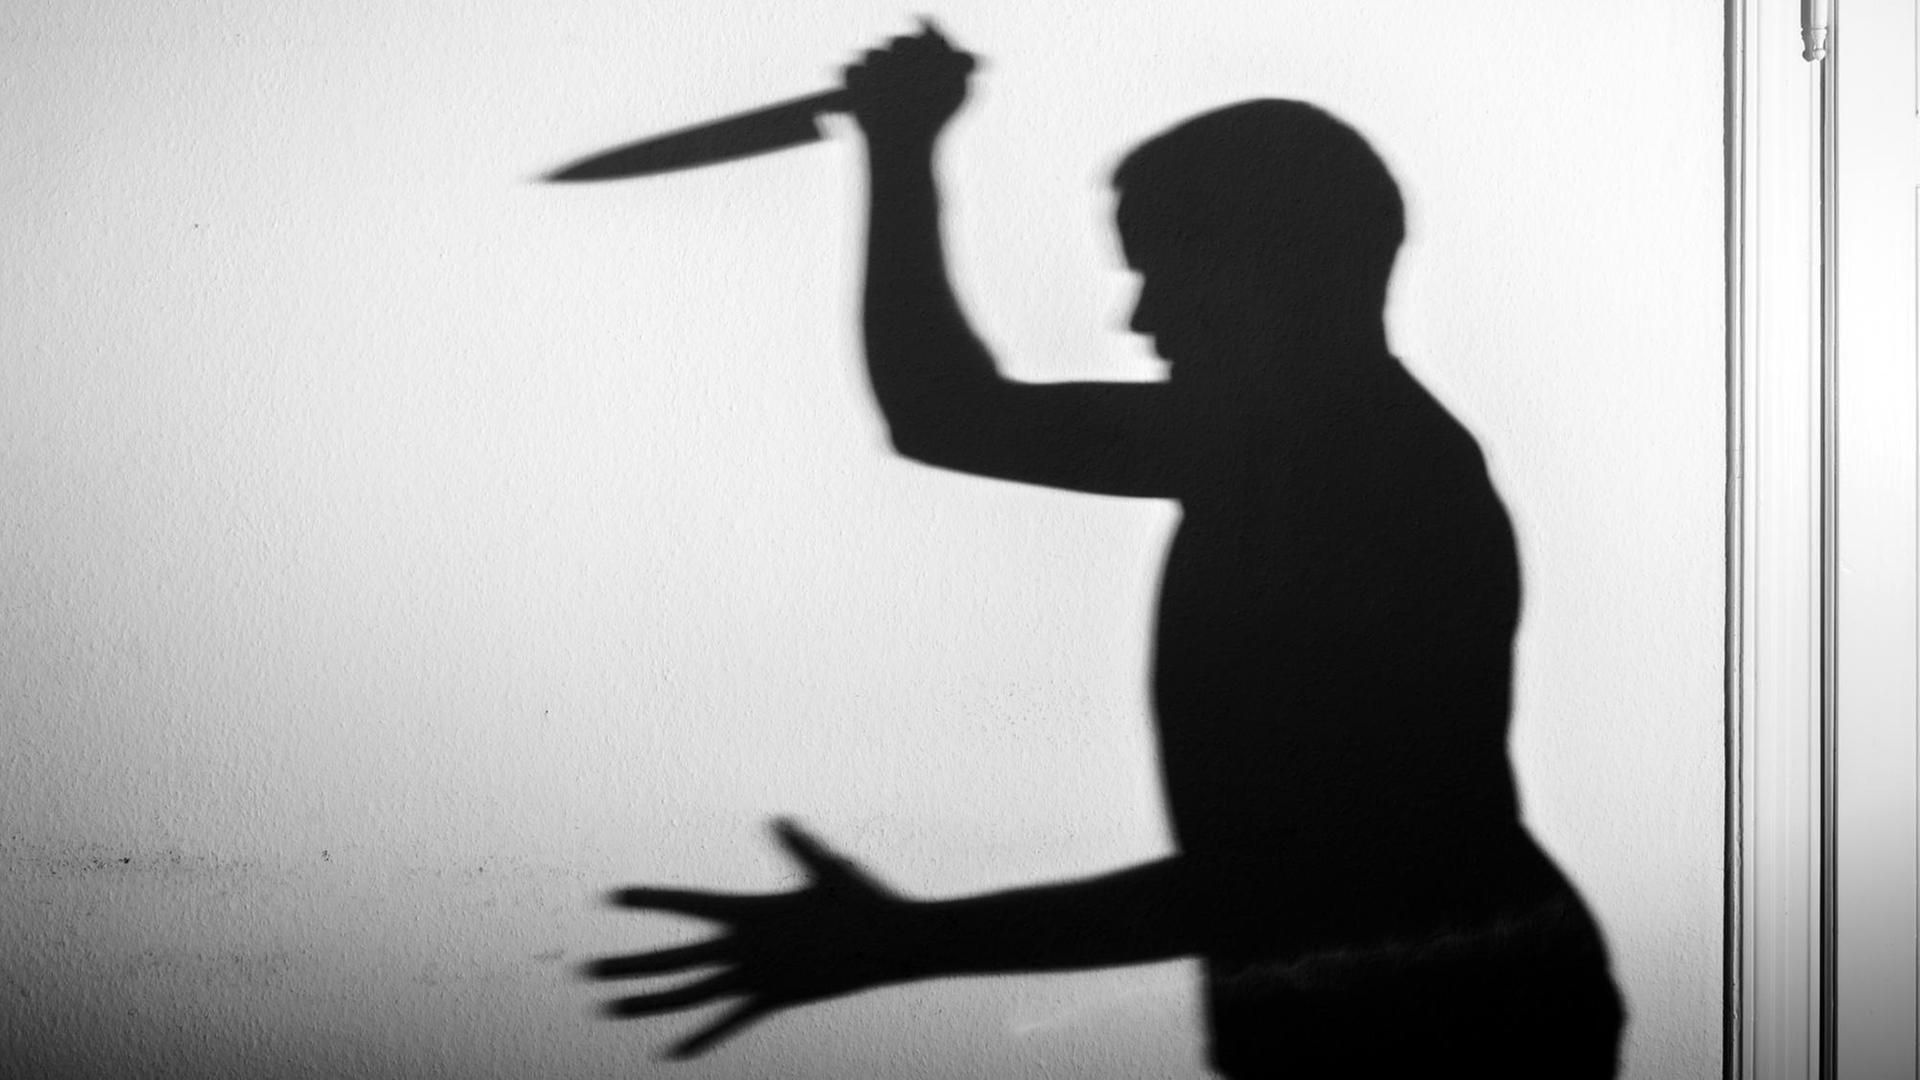 Der Schatten eines Mannes mit einem großen Küchenmesser in der Hand wird an eine weiße Wand geworfen.